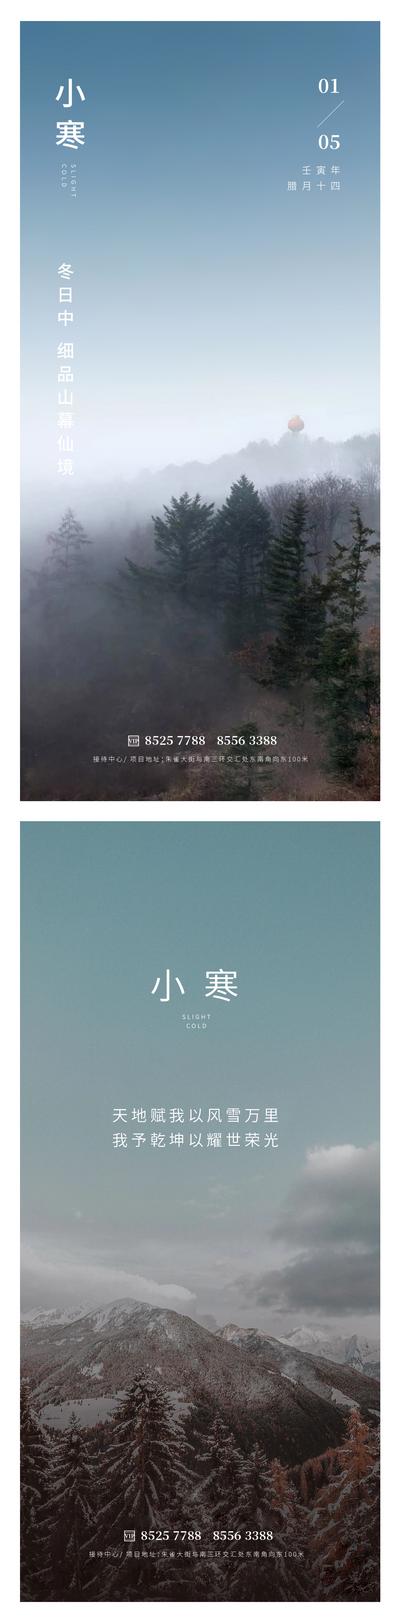 南门网 广告 海报 地产 小寒 节气 山 天空 树